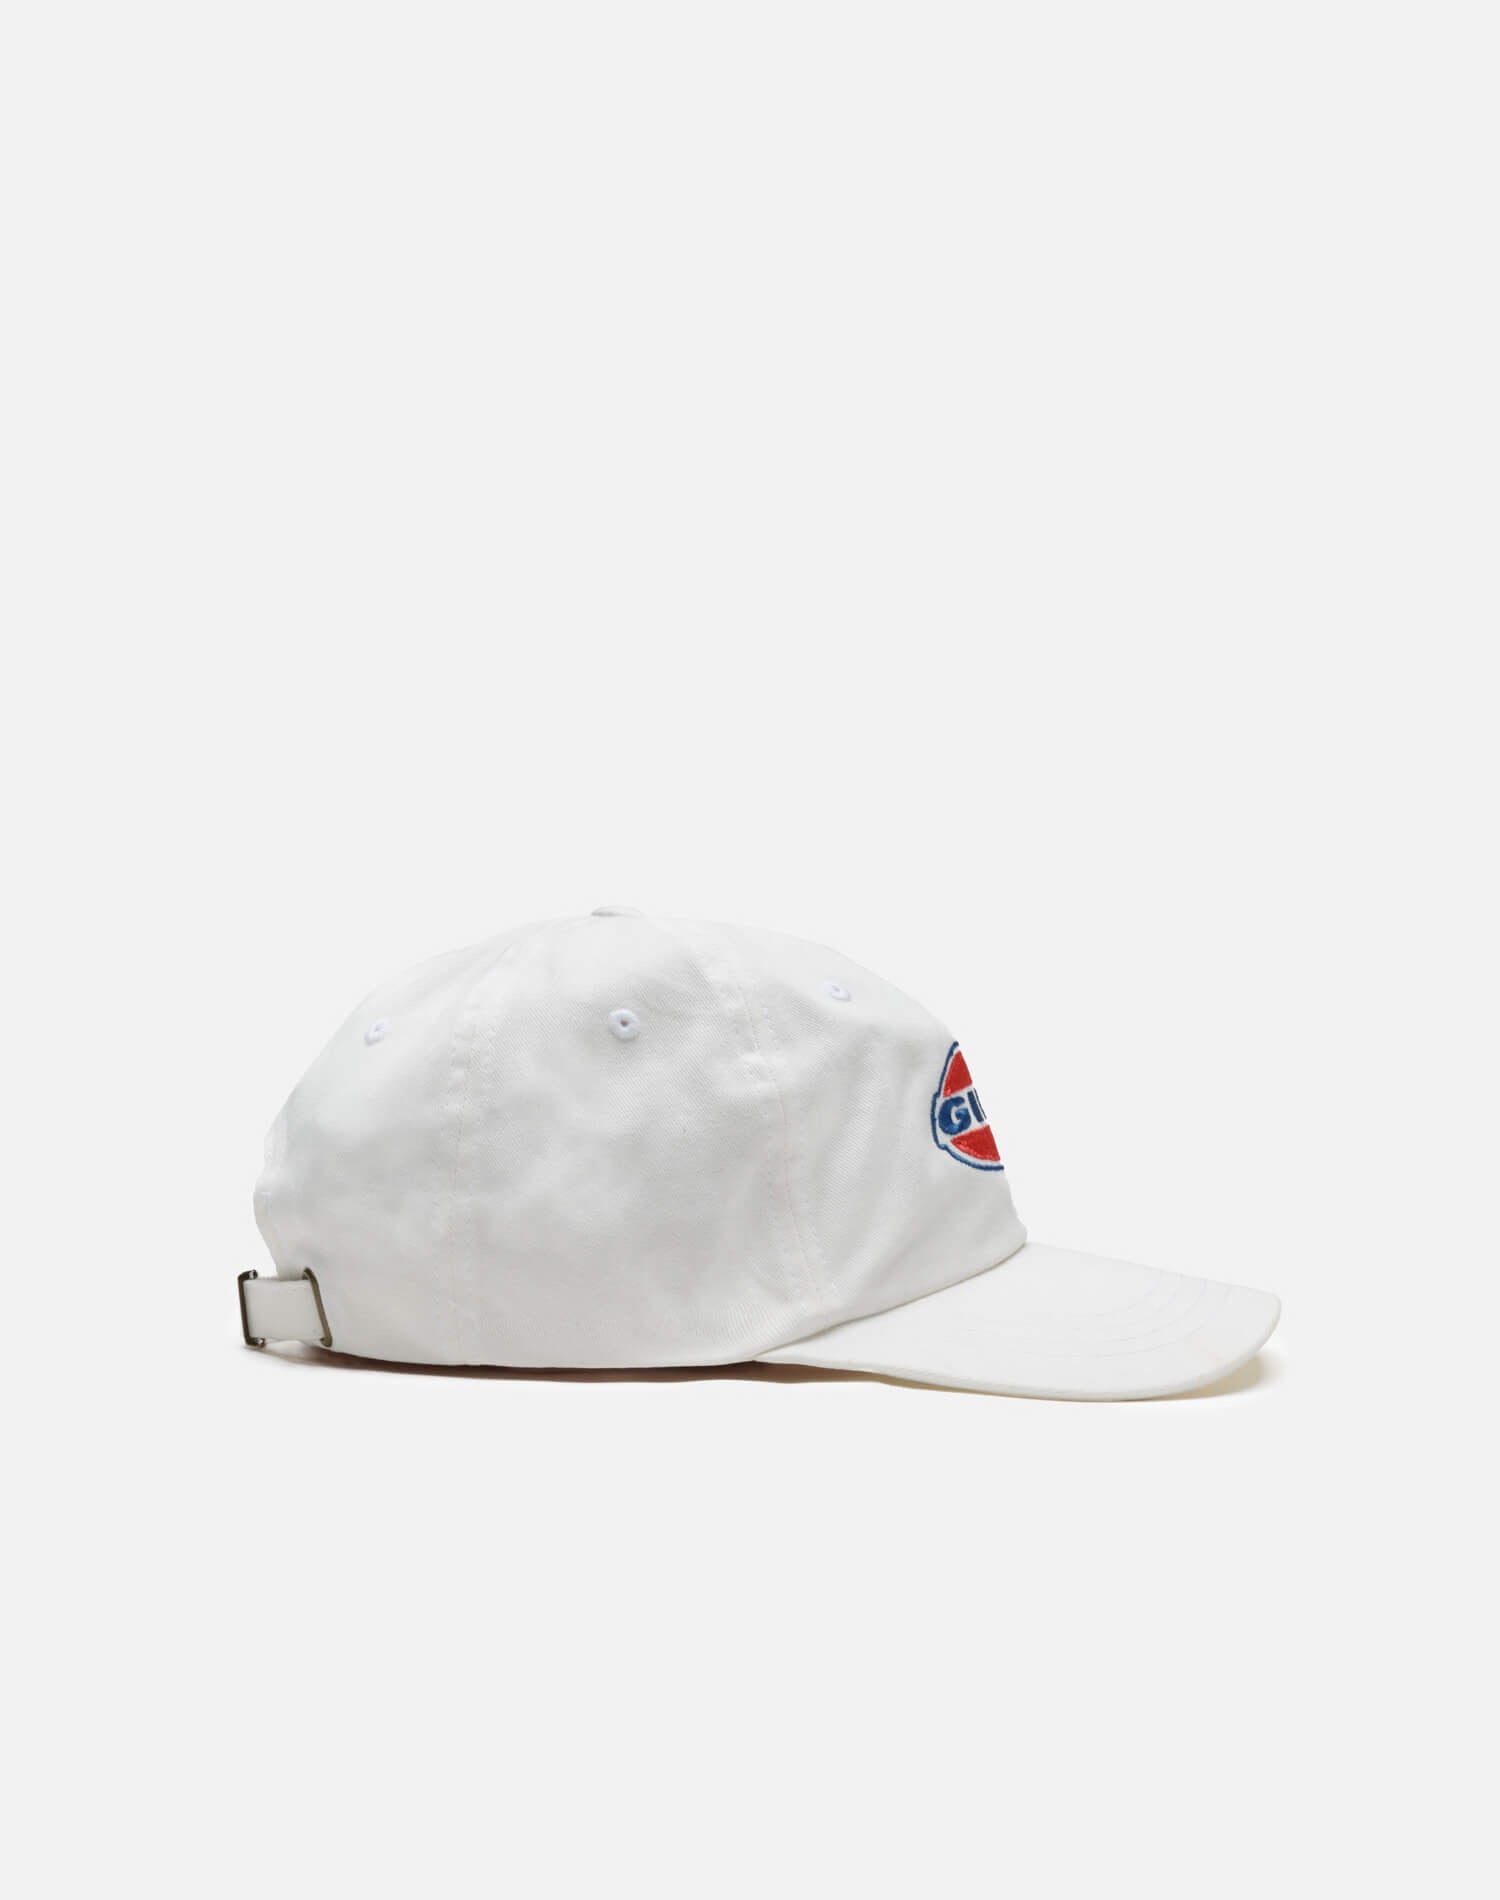 Baseball Hat "Girl" - White